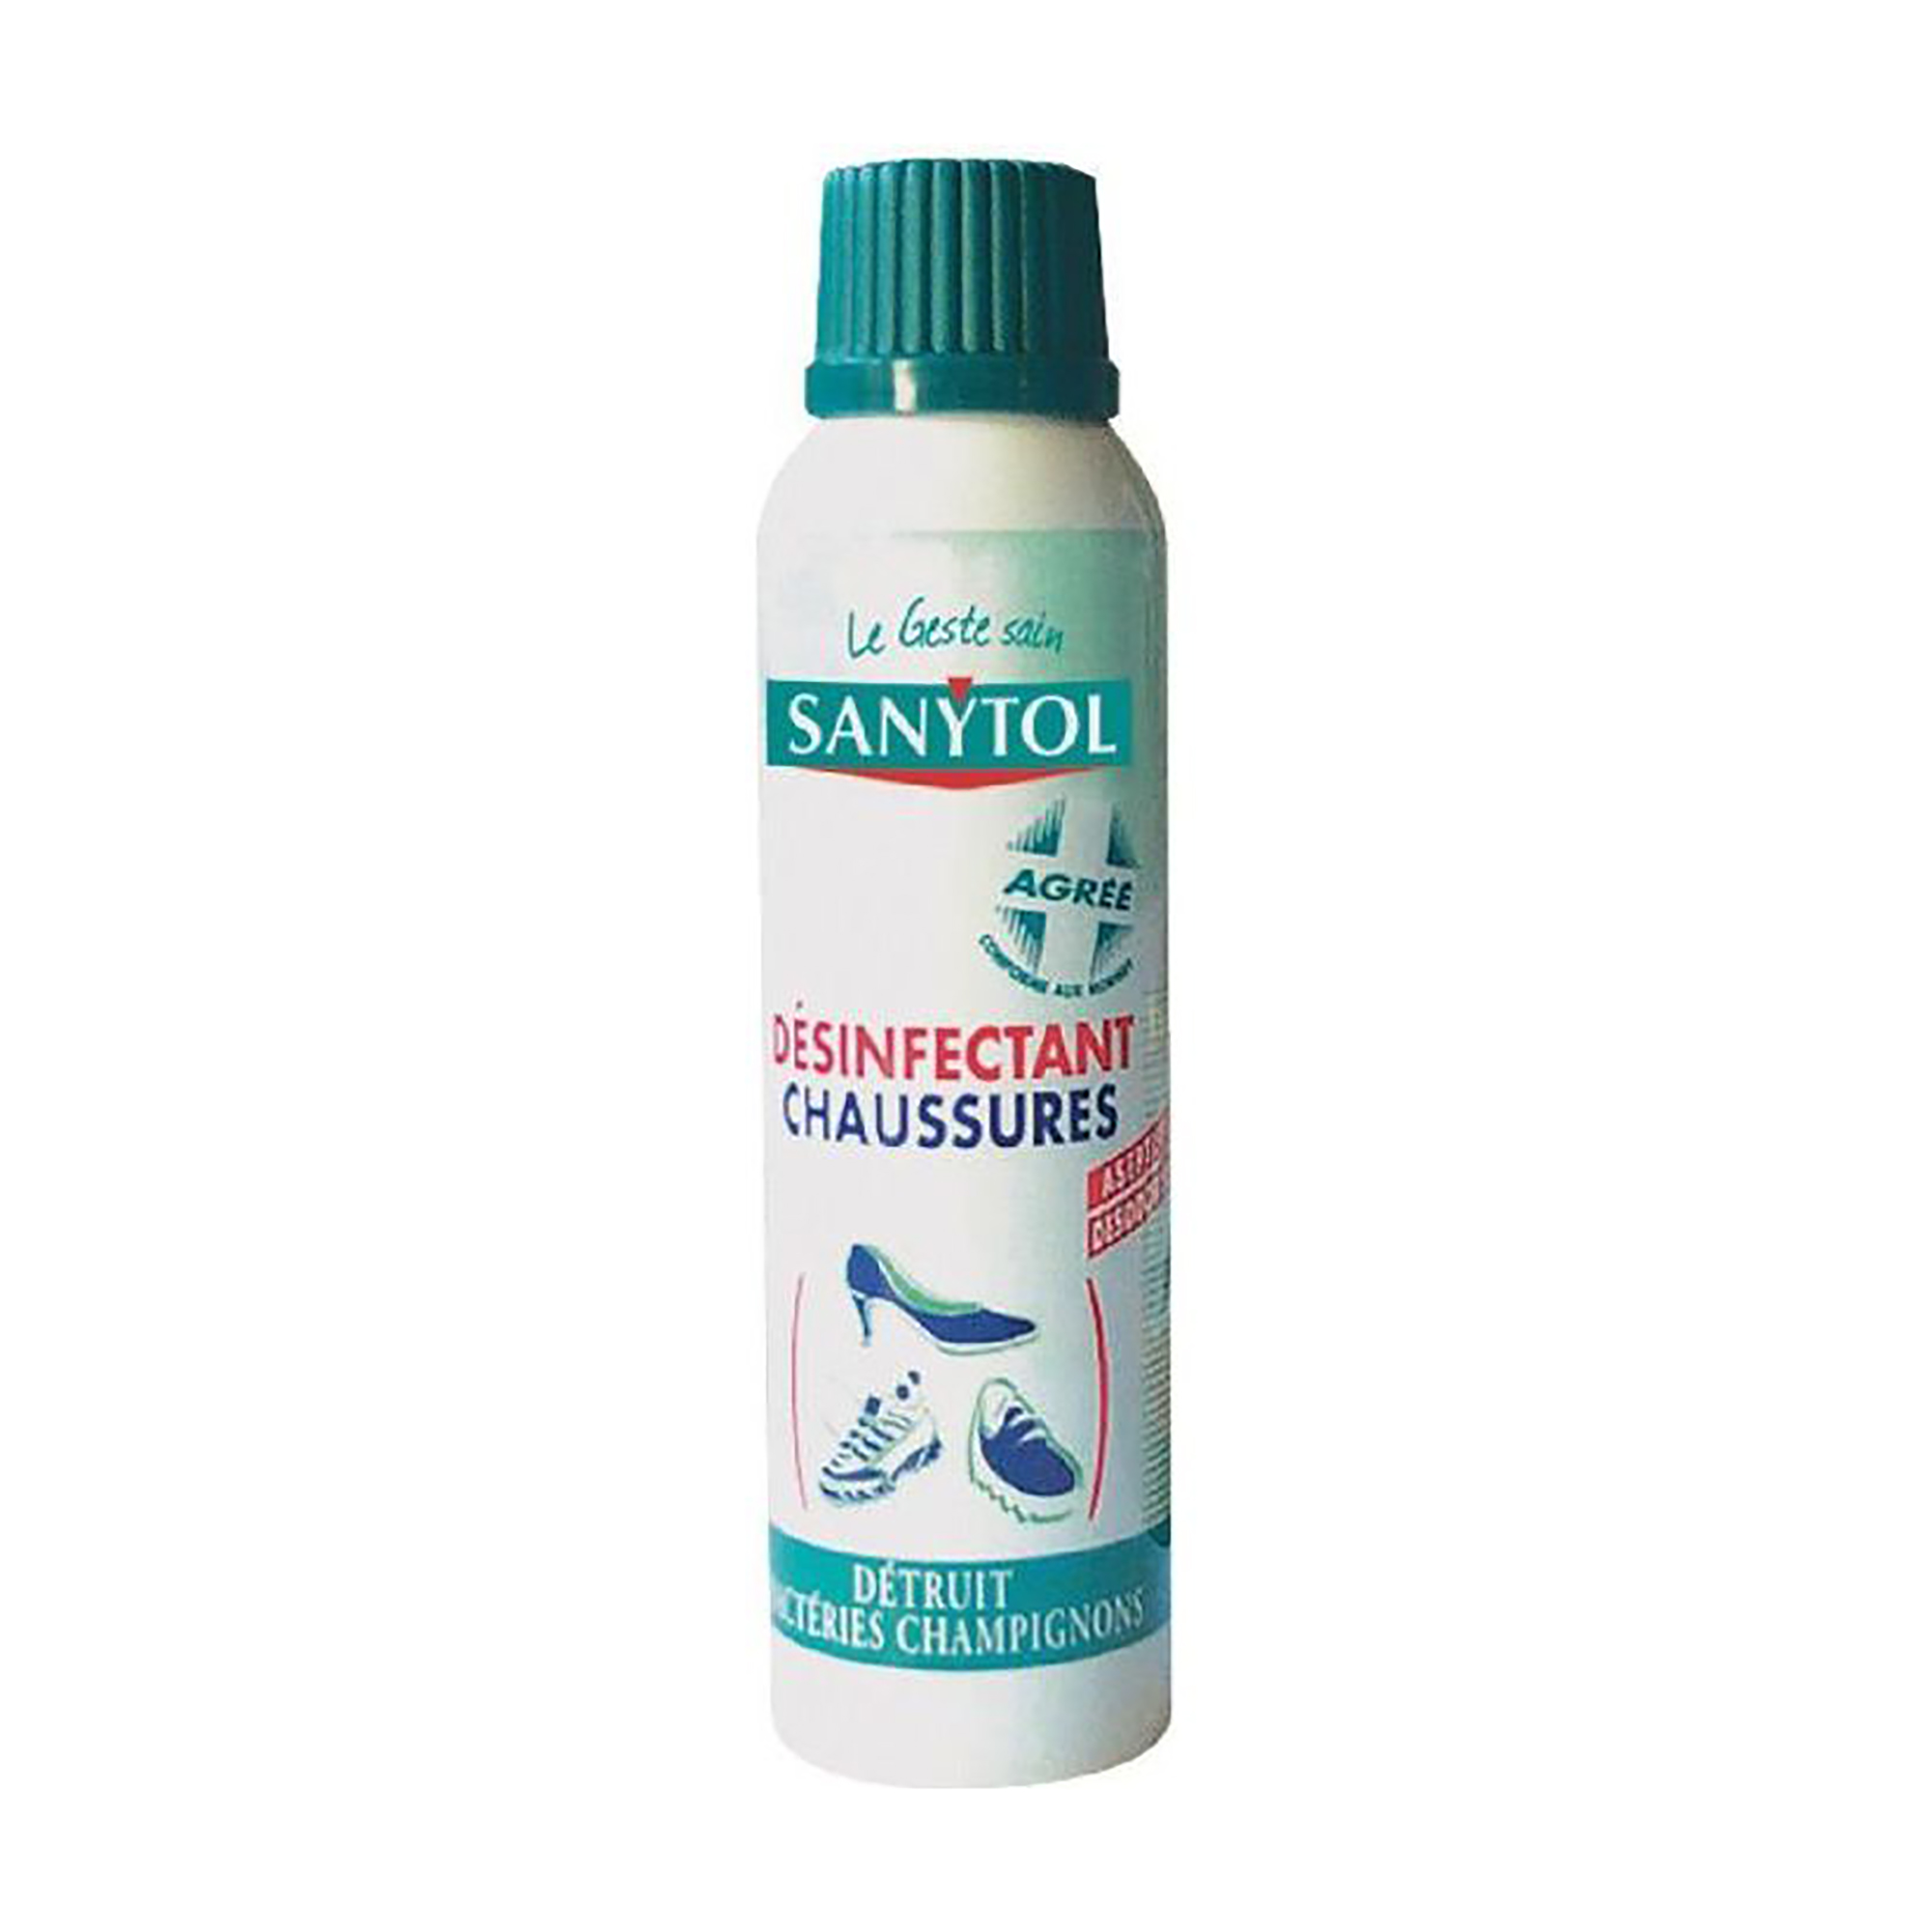 Sanytol, désinfectant anti-acariens